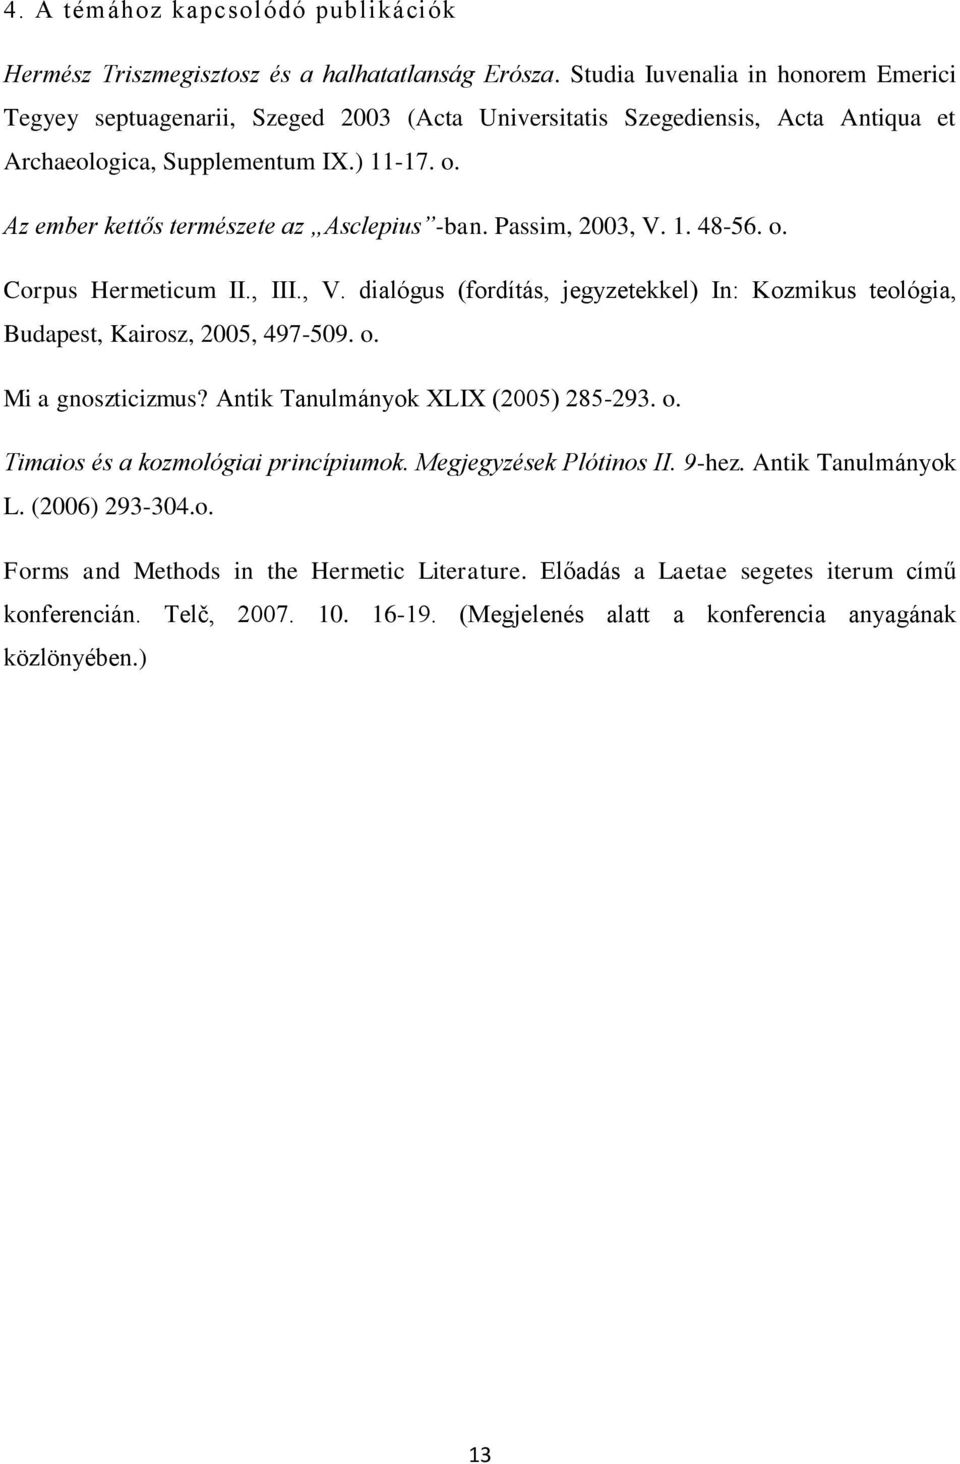 Az ember kettős természete az Asclepius -ban. Passim, 2003, V. 1. 48-56. o. Corpus Hermeticum II., III., V. dialógus (fordítás, jegyzetekkel) In: Kozmikus teológia, Budapest, Kairosz, 2005, 497-509.